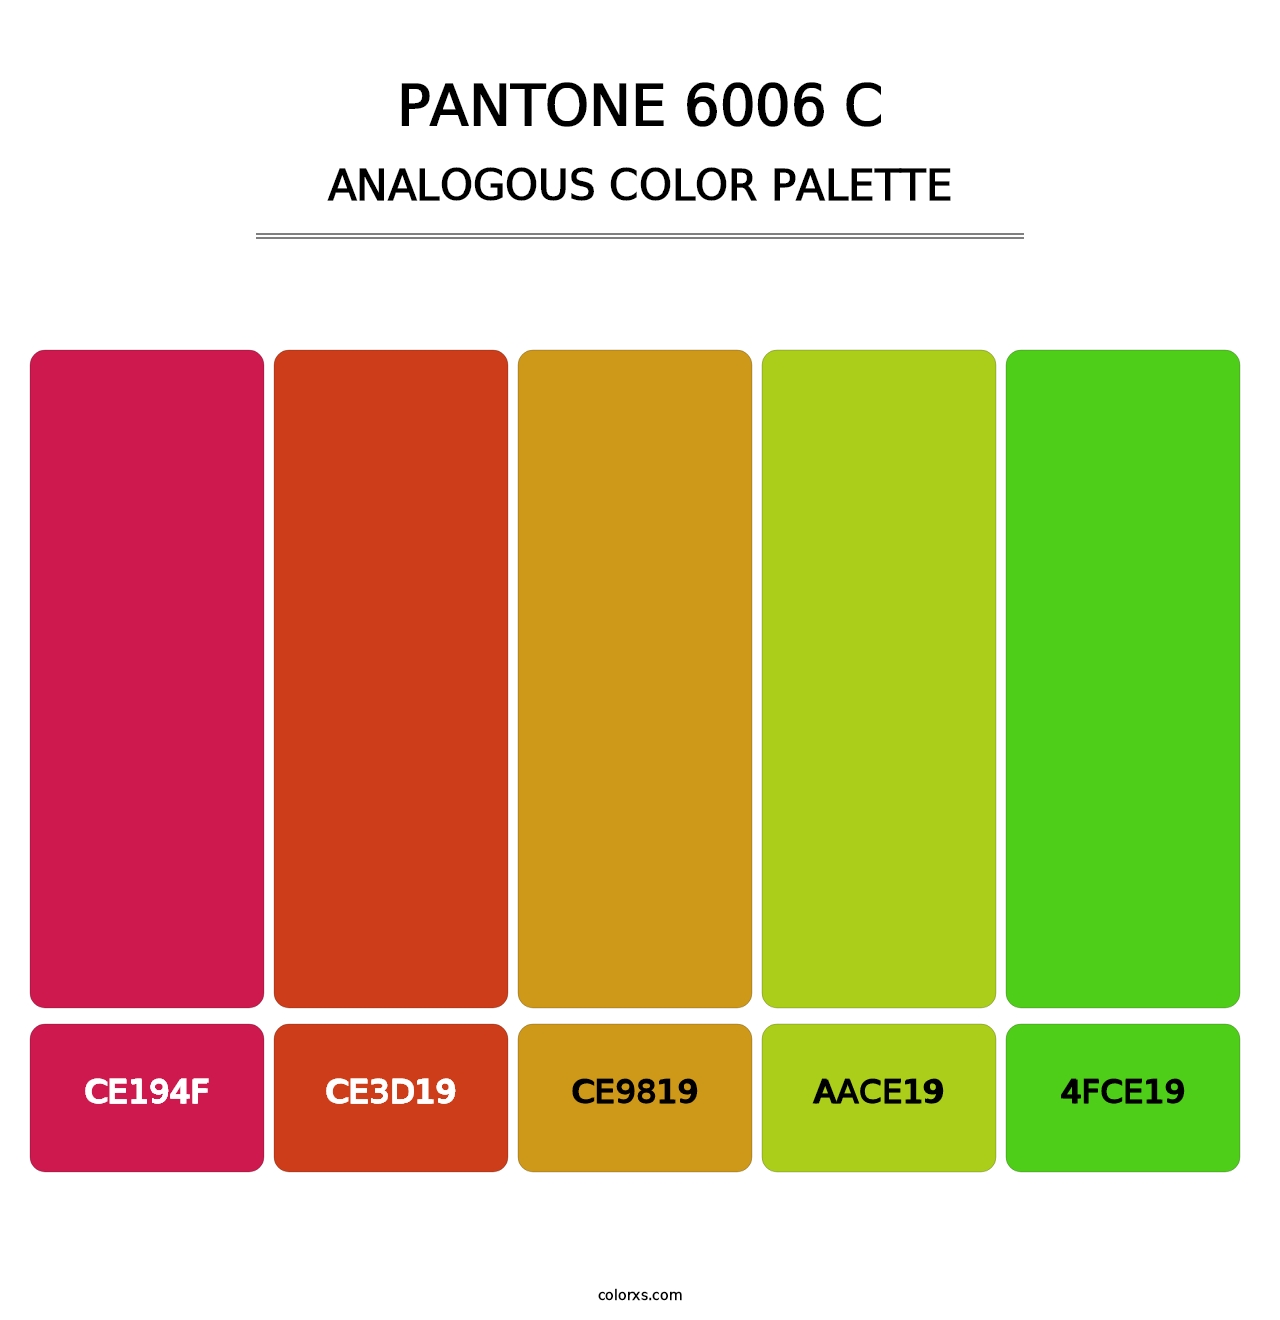 PANTONE 6006 C - Analogous Color Palette